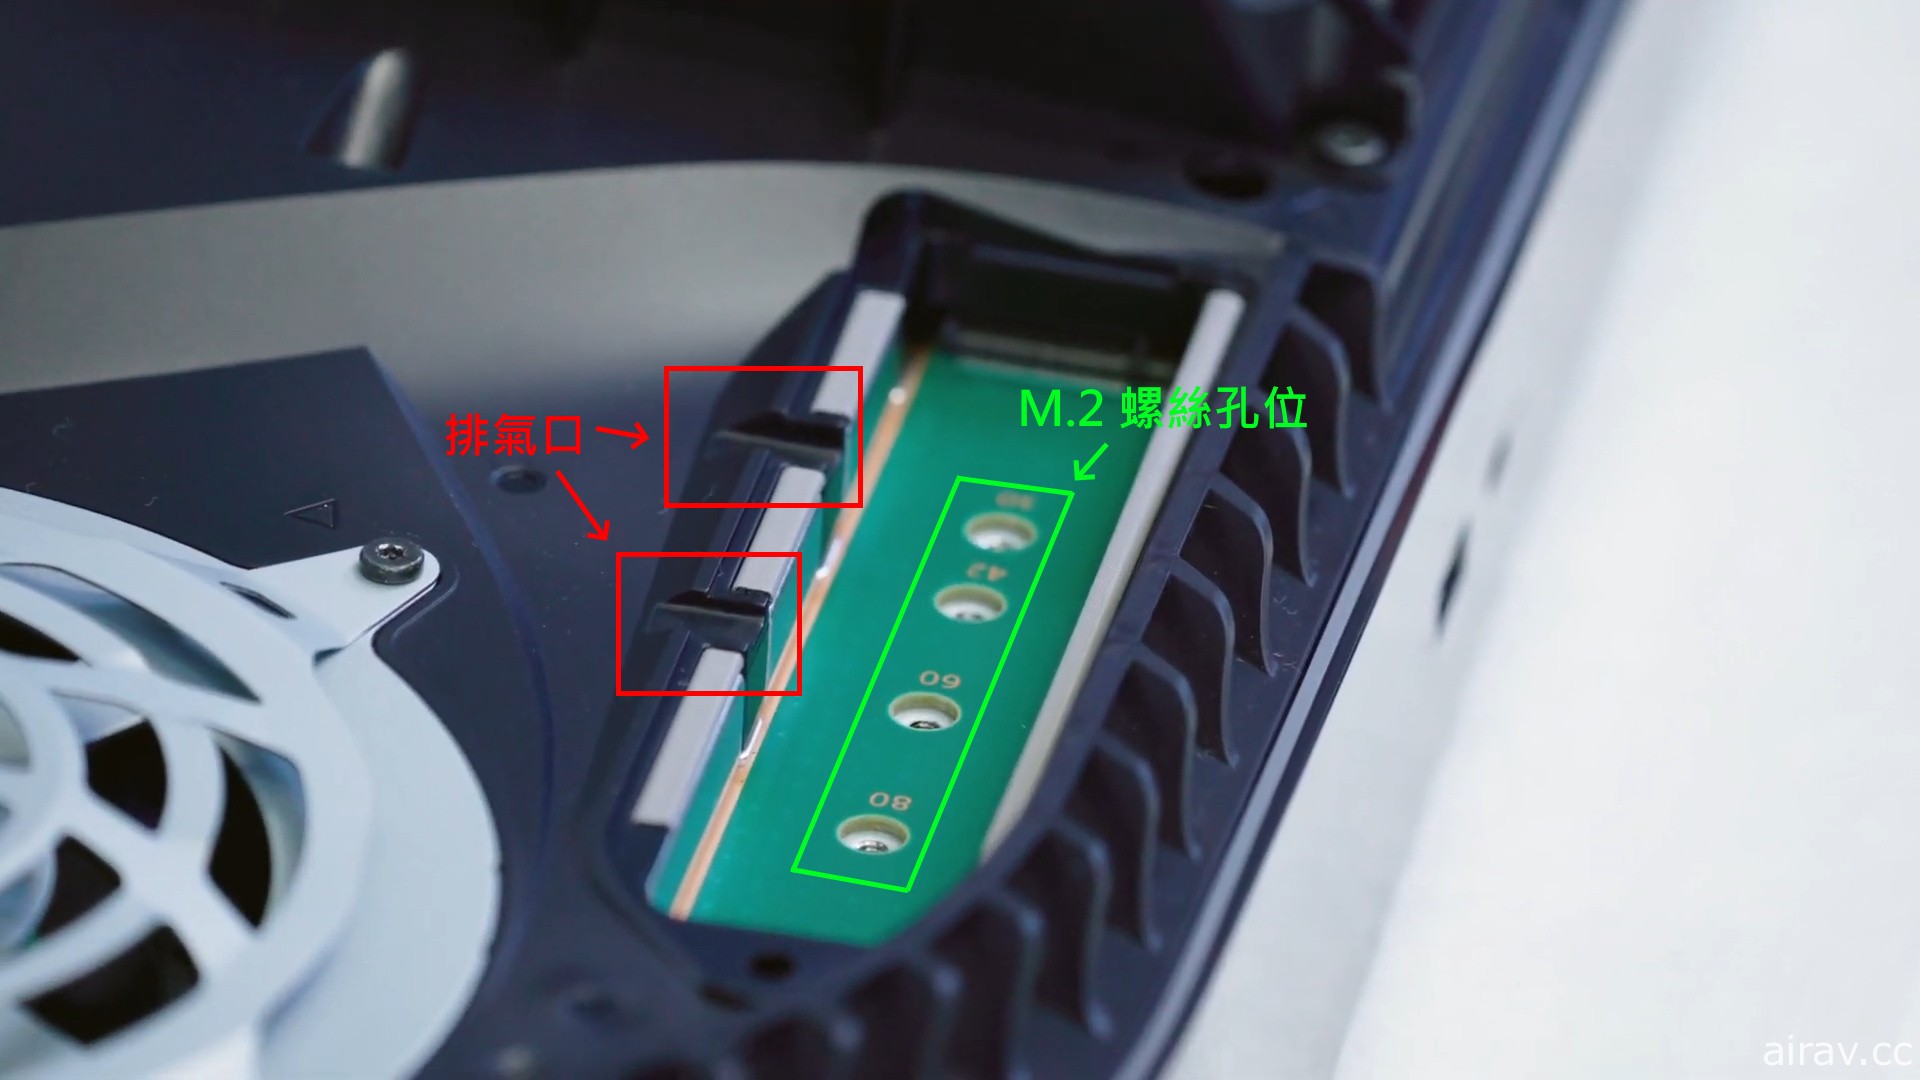 SIE 硬體設計主管透露 PS5 內部設計秘辛 導入液態金屬材質降低整體散熱成本